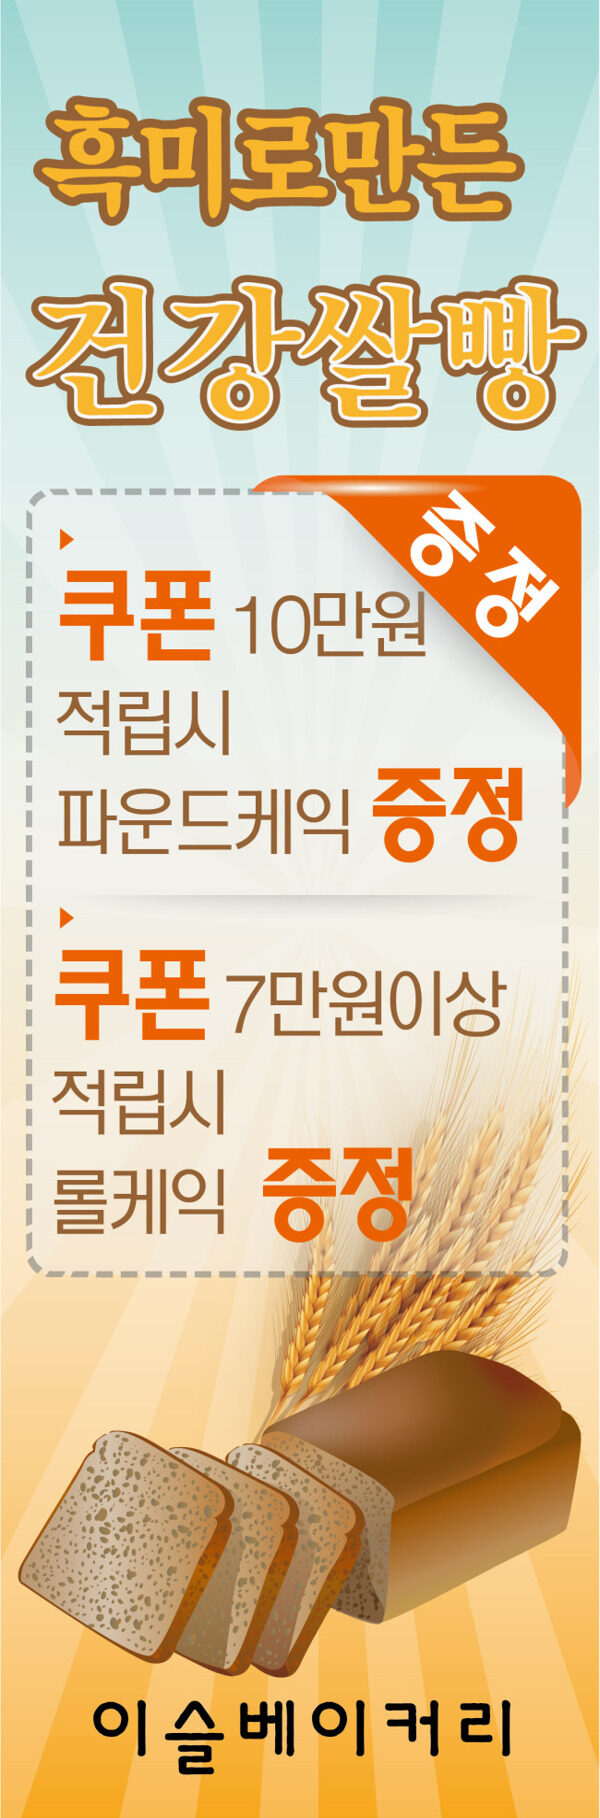 纯天然健康小麦面包食品韩国矢量促销海报